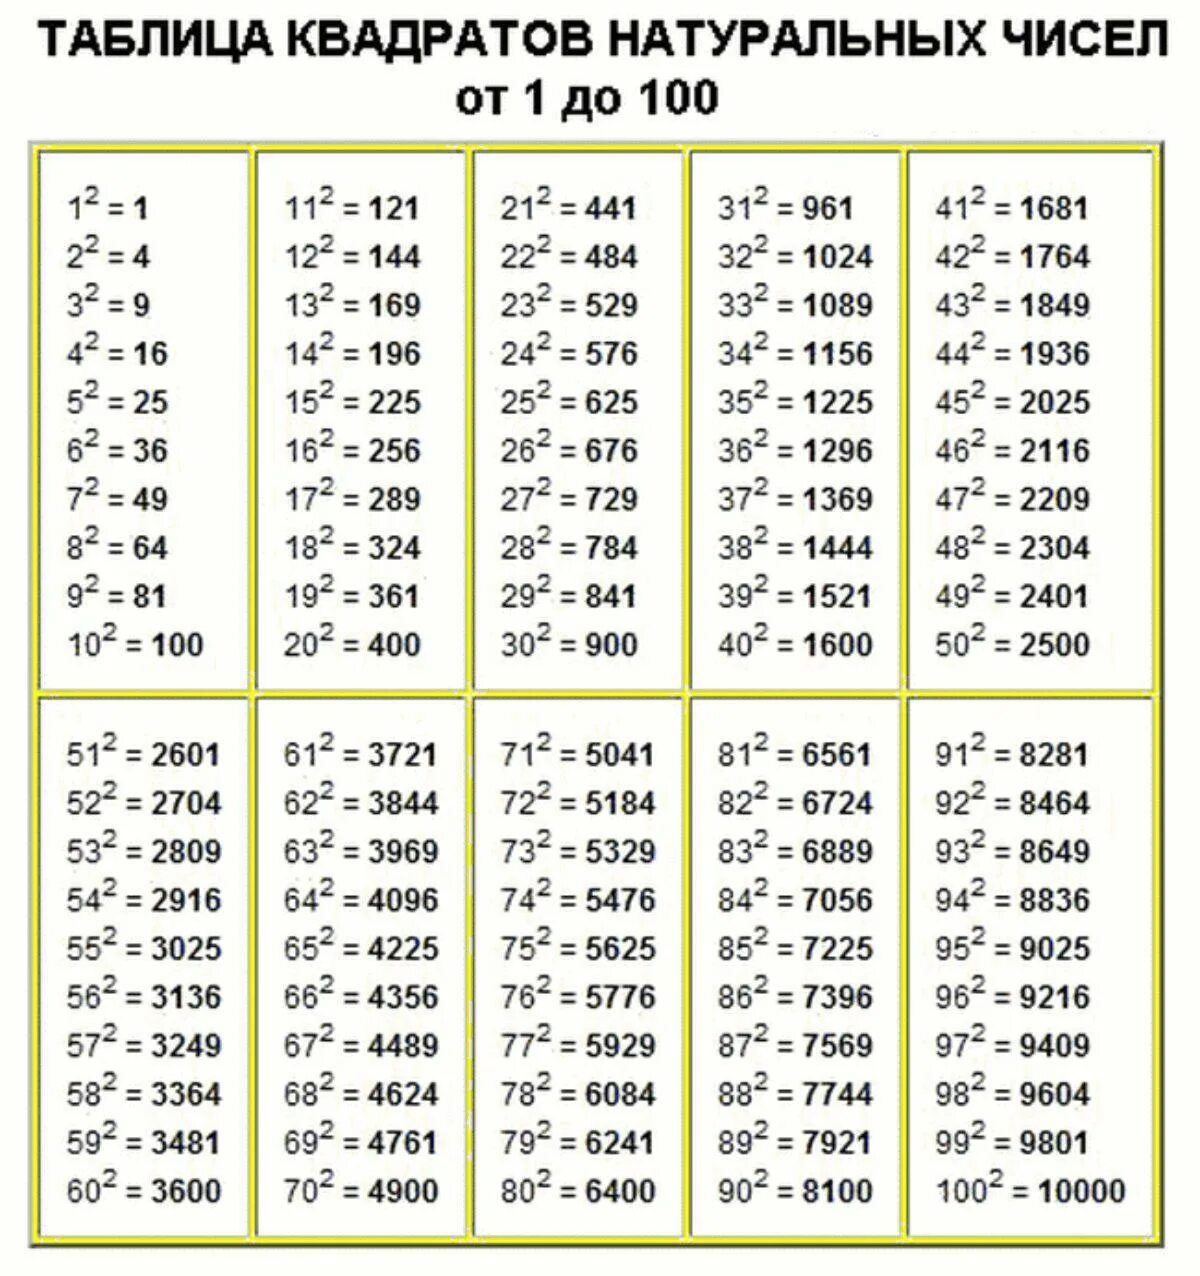 Сколько 18 16 9 2. Квадраты натуральных чисел от 1 до 100. Таблица кубов натуральных чисел от 1 до 20. Таблица квадратных натуральных чисел от 1 до 100. Таблица квадратов натуральных чисел от 1 до 20.